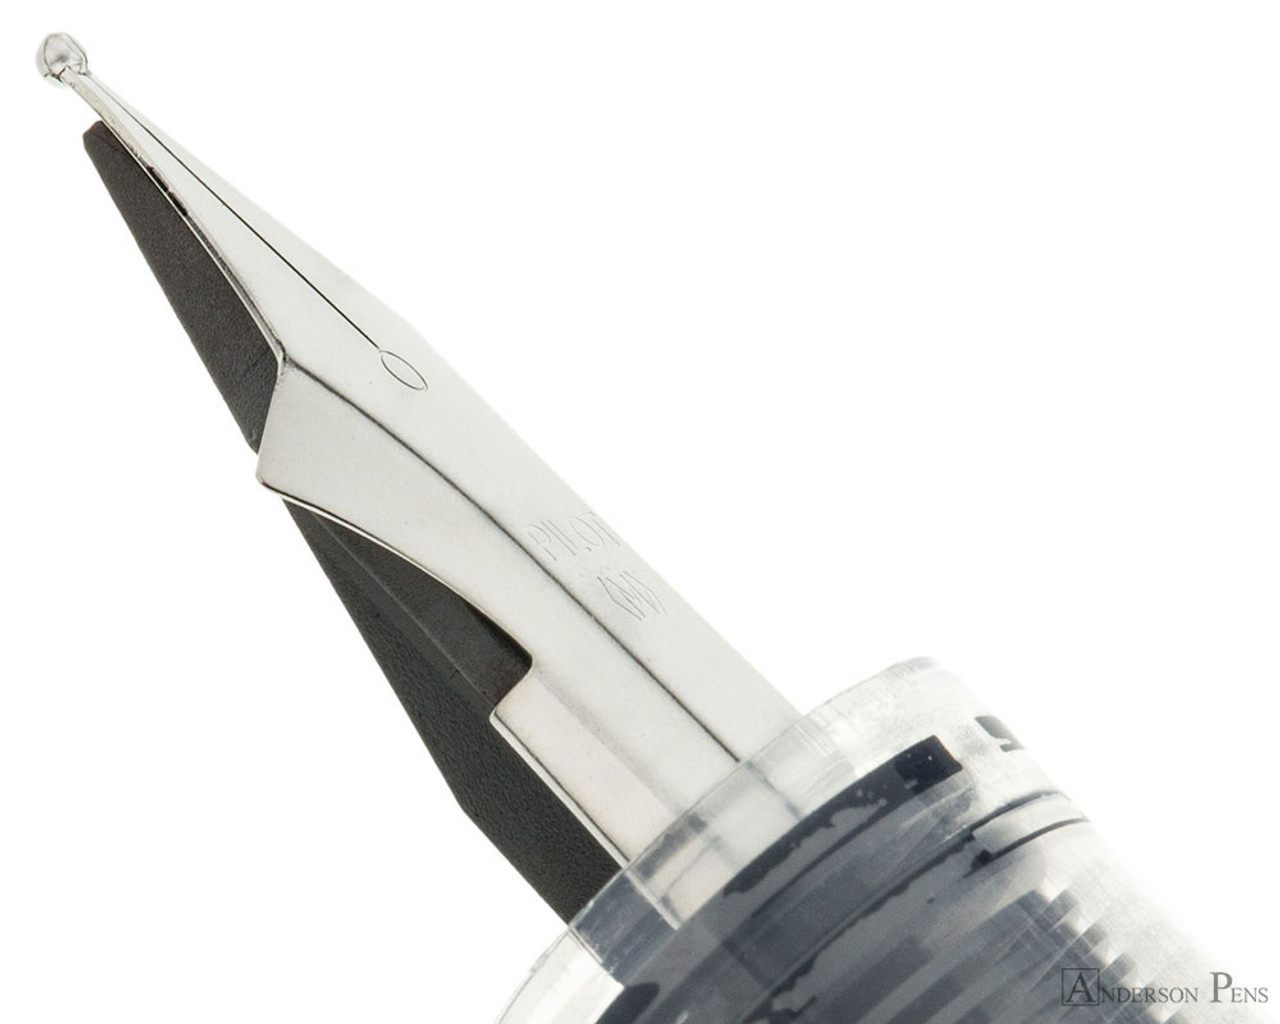 Pilot PIL90029 Varsity Disposable Fountain Pens, 1 mm Fine - 7 pack